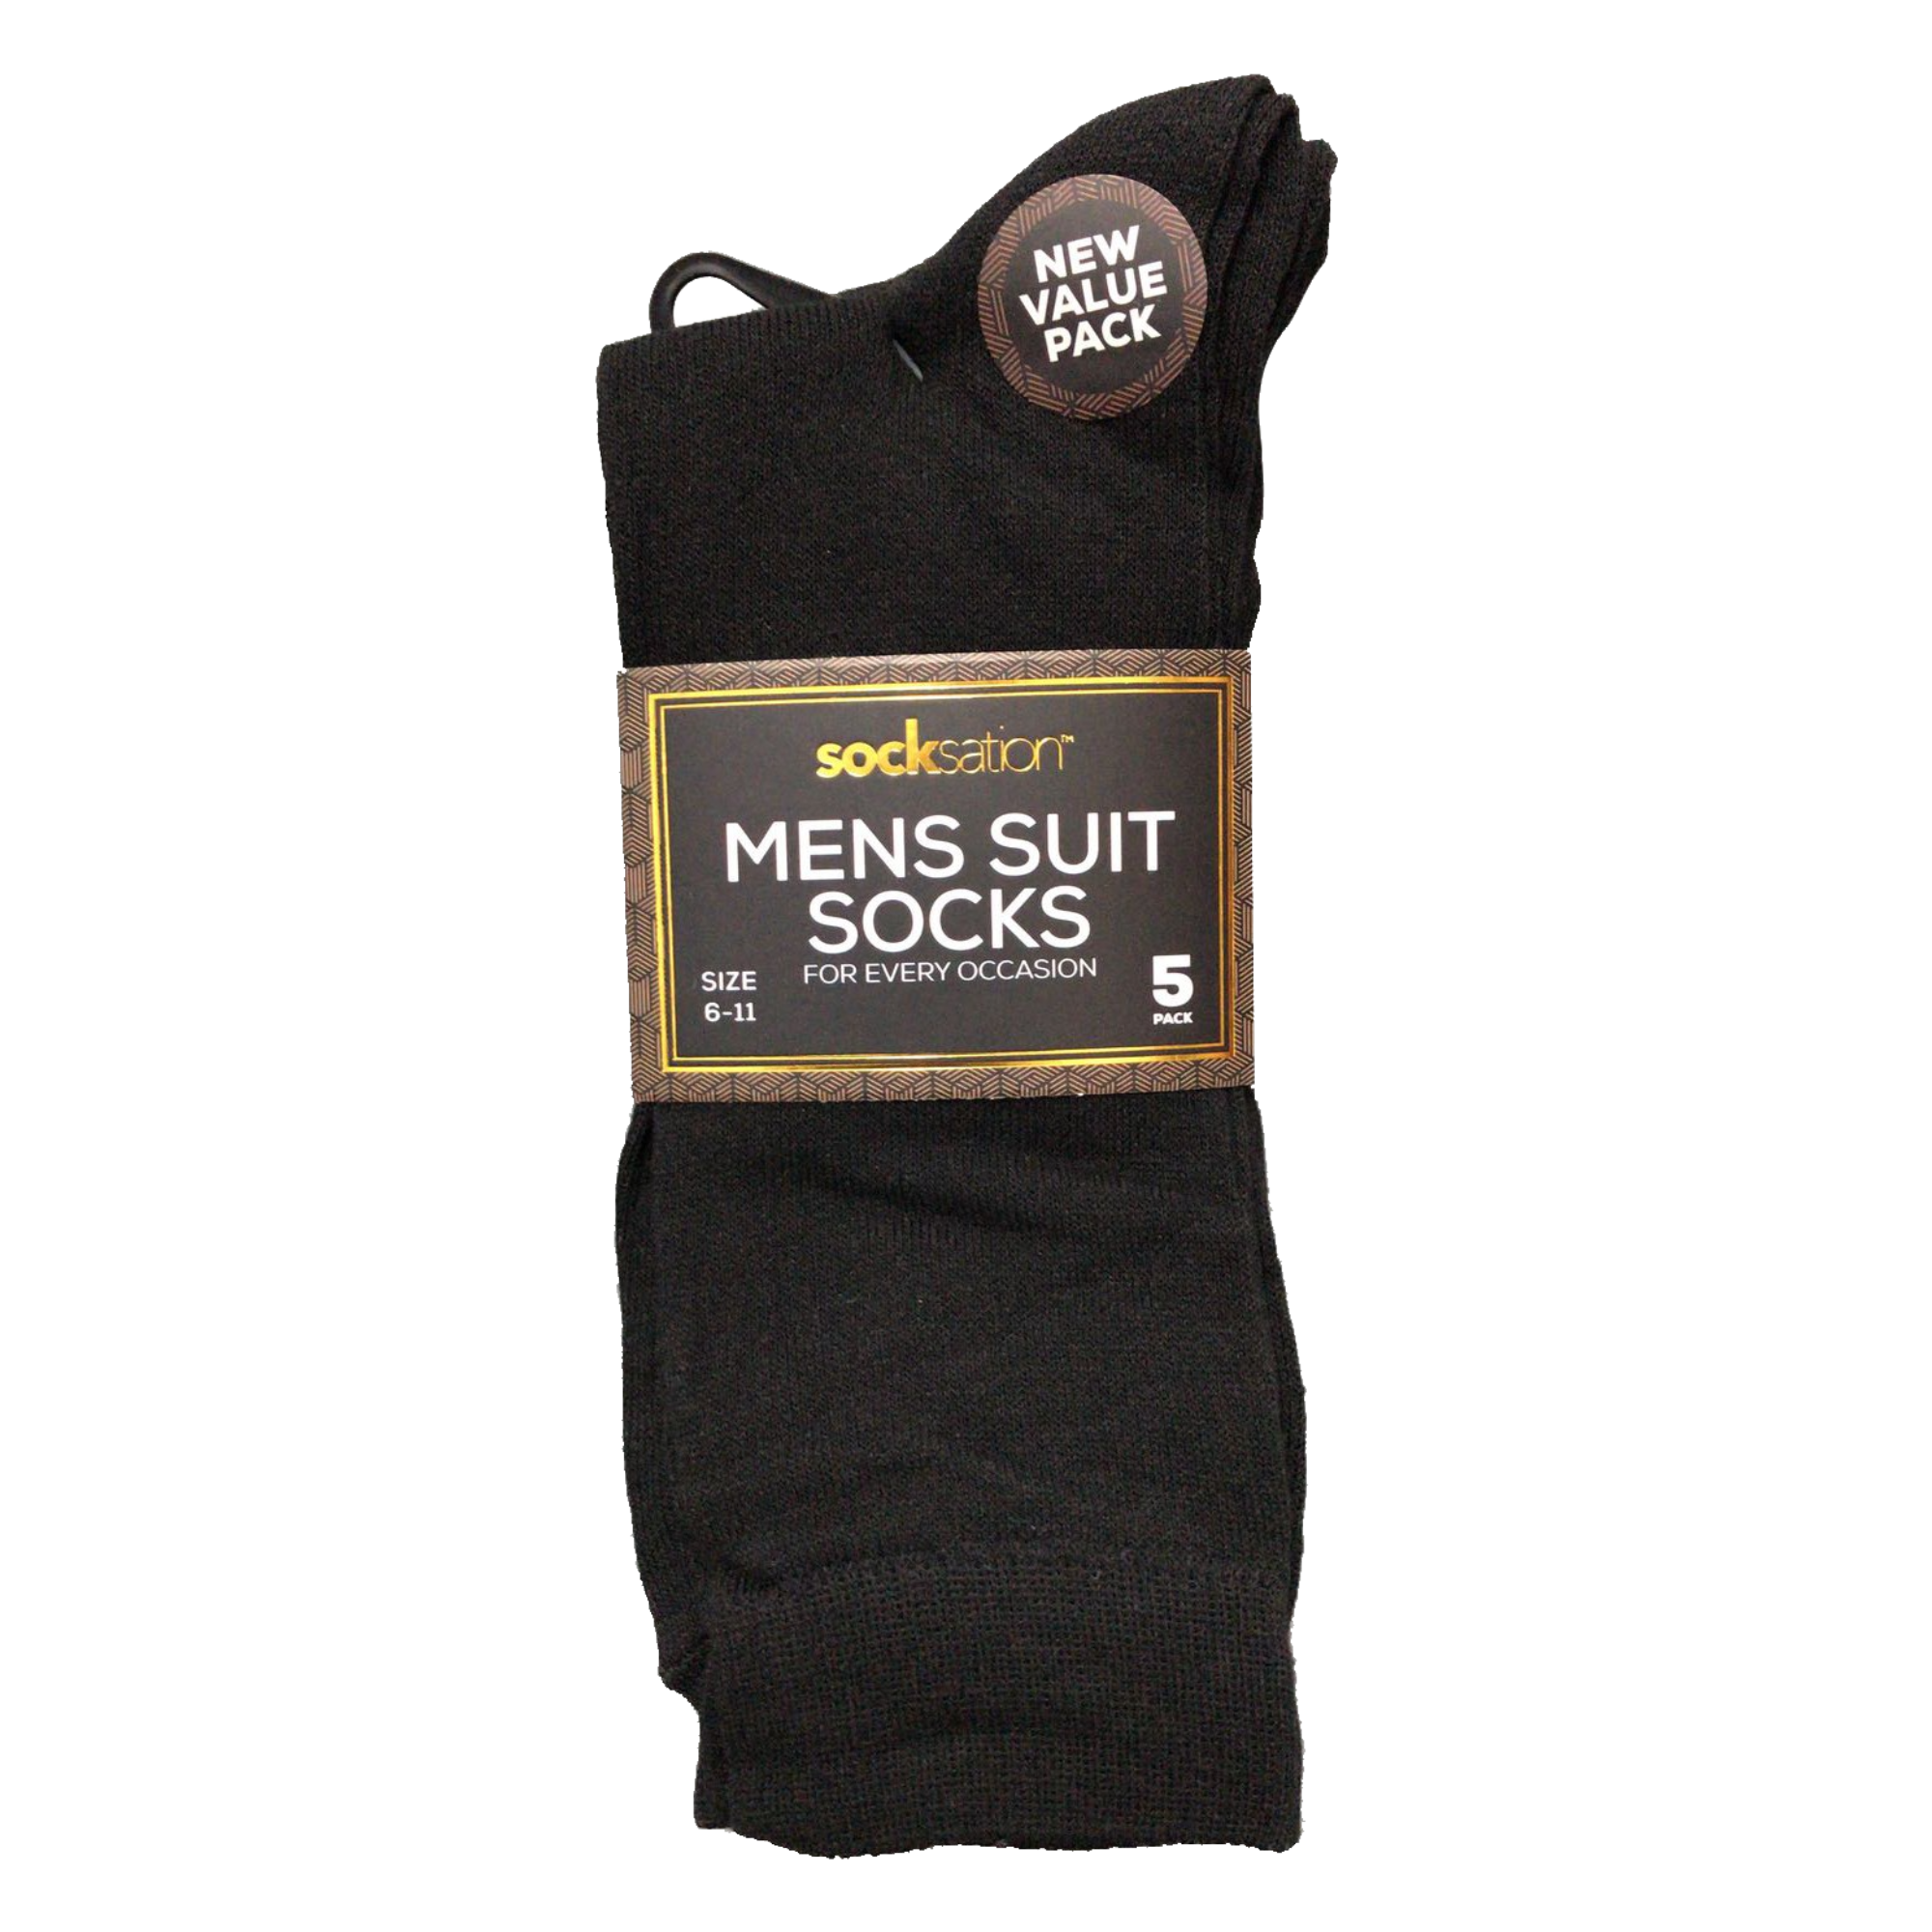 Men’s Black Formal Suit Socks- 5 Pack - TJ Hughes